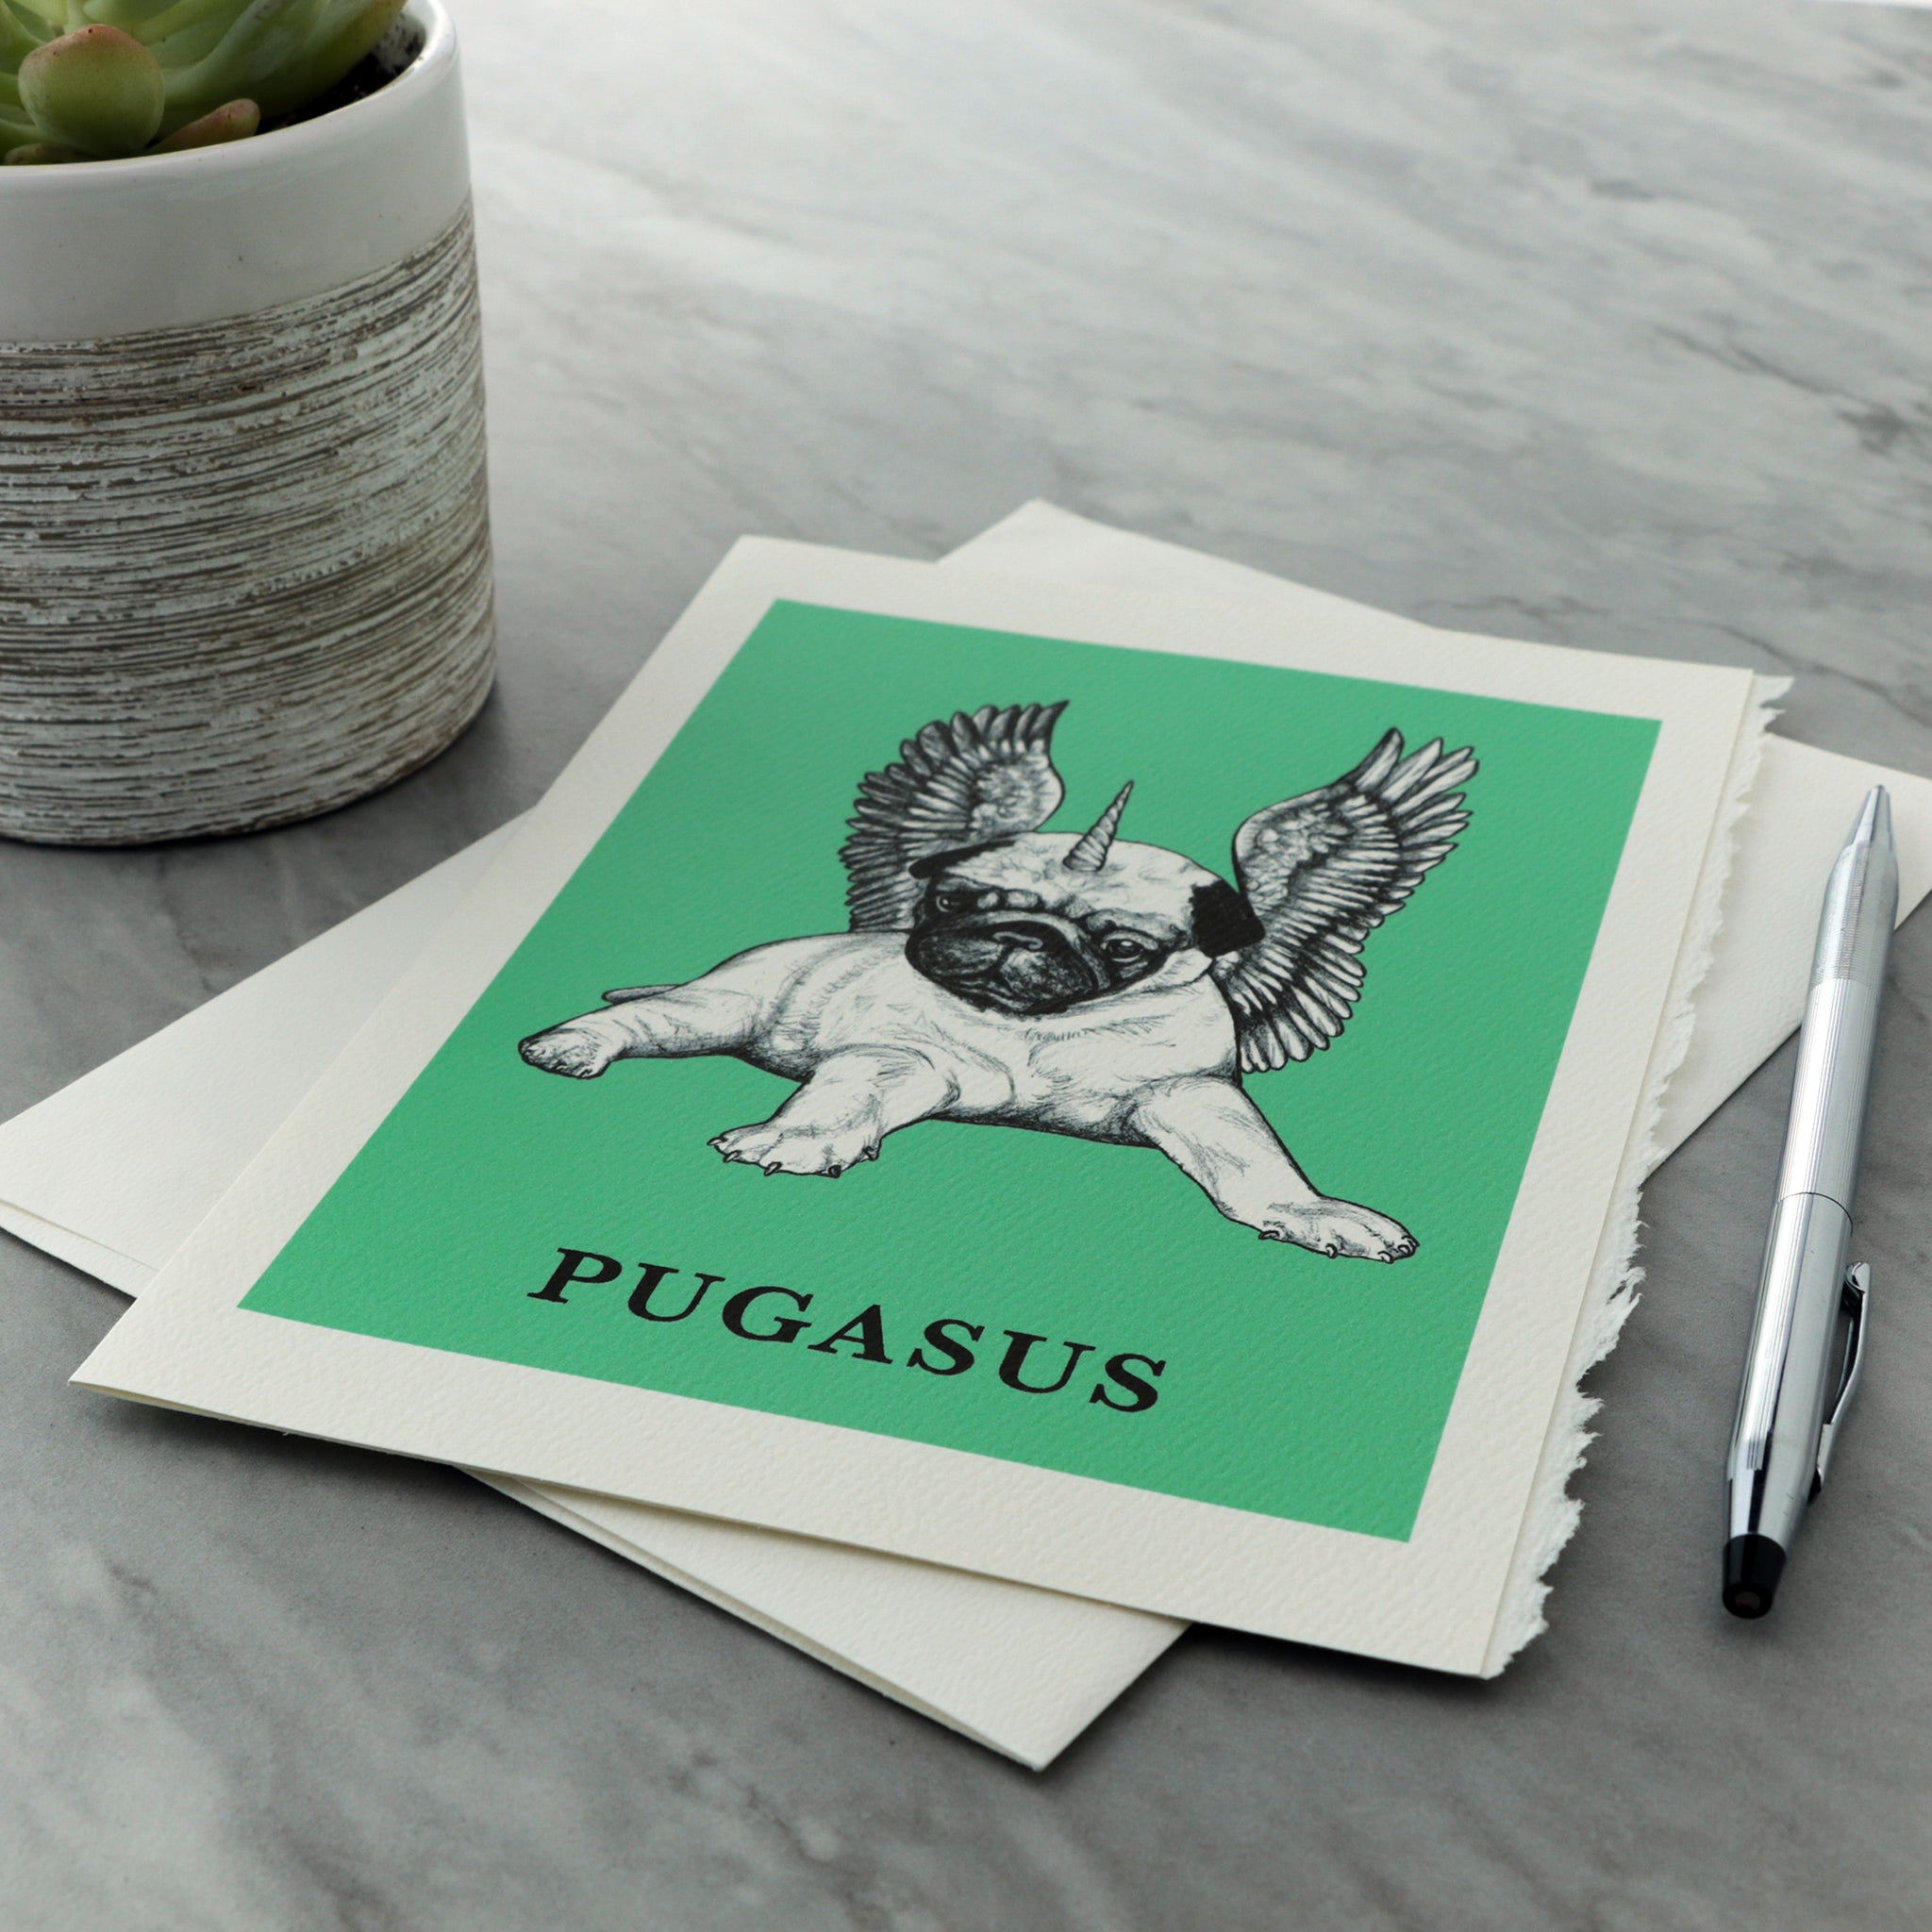 Pugasus 5x7" Greeting Card